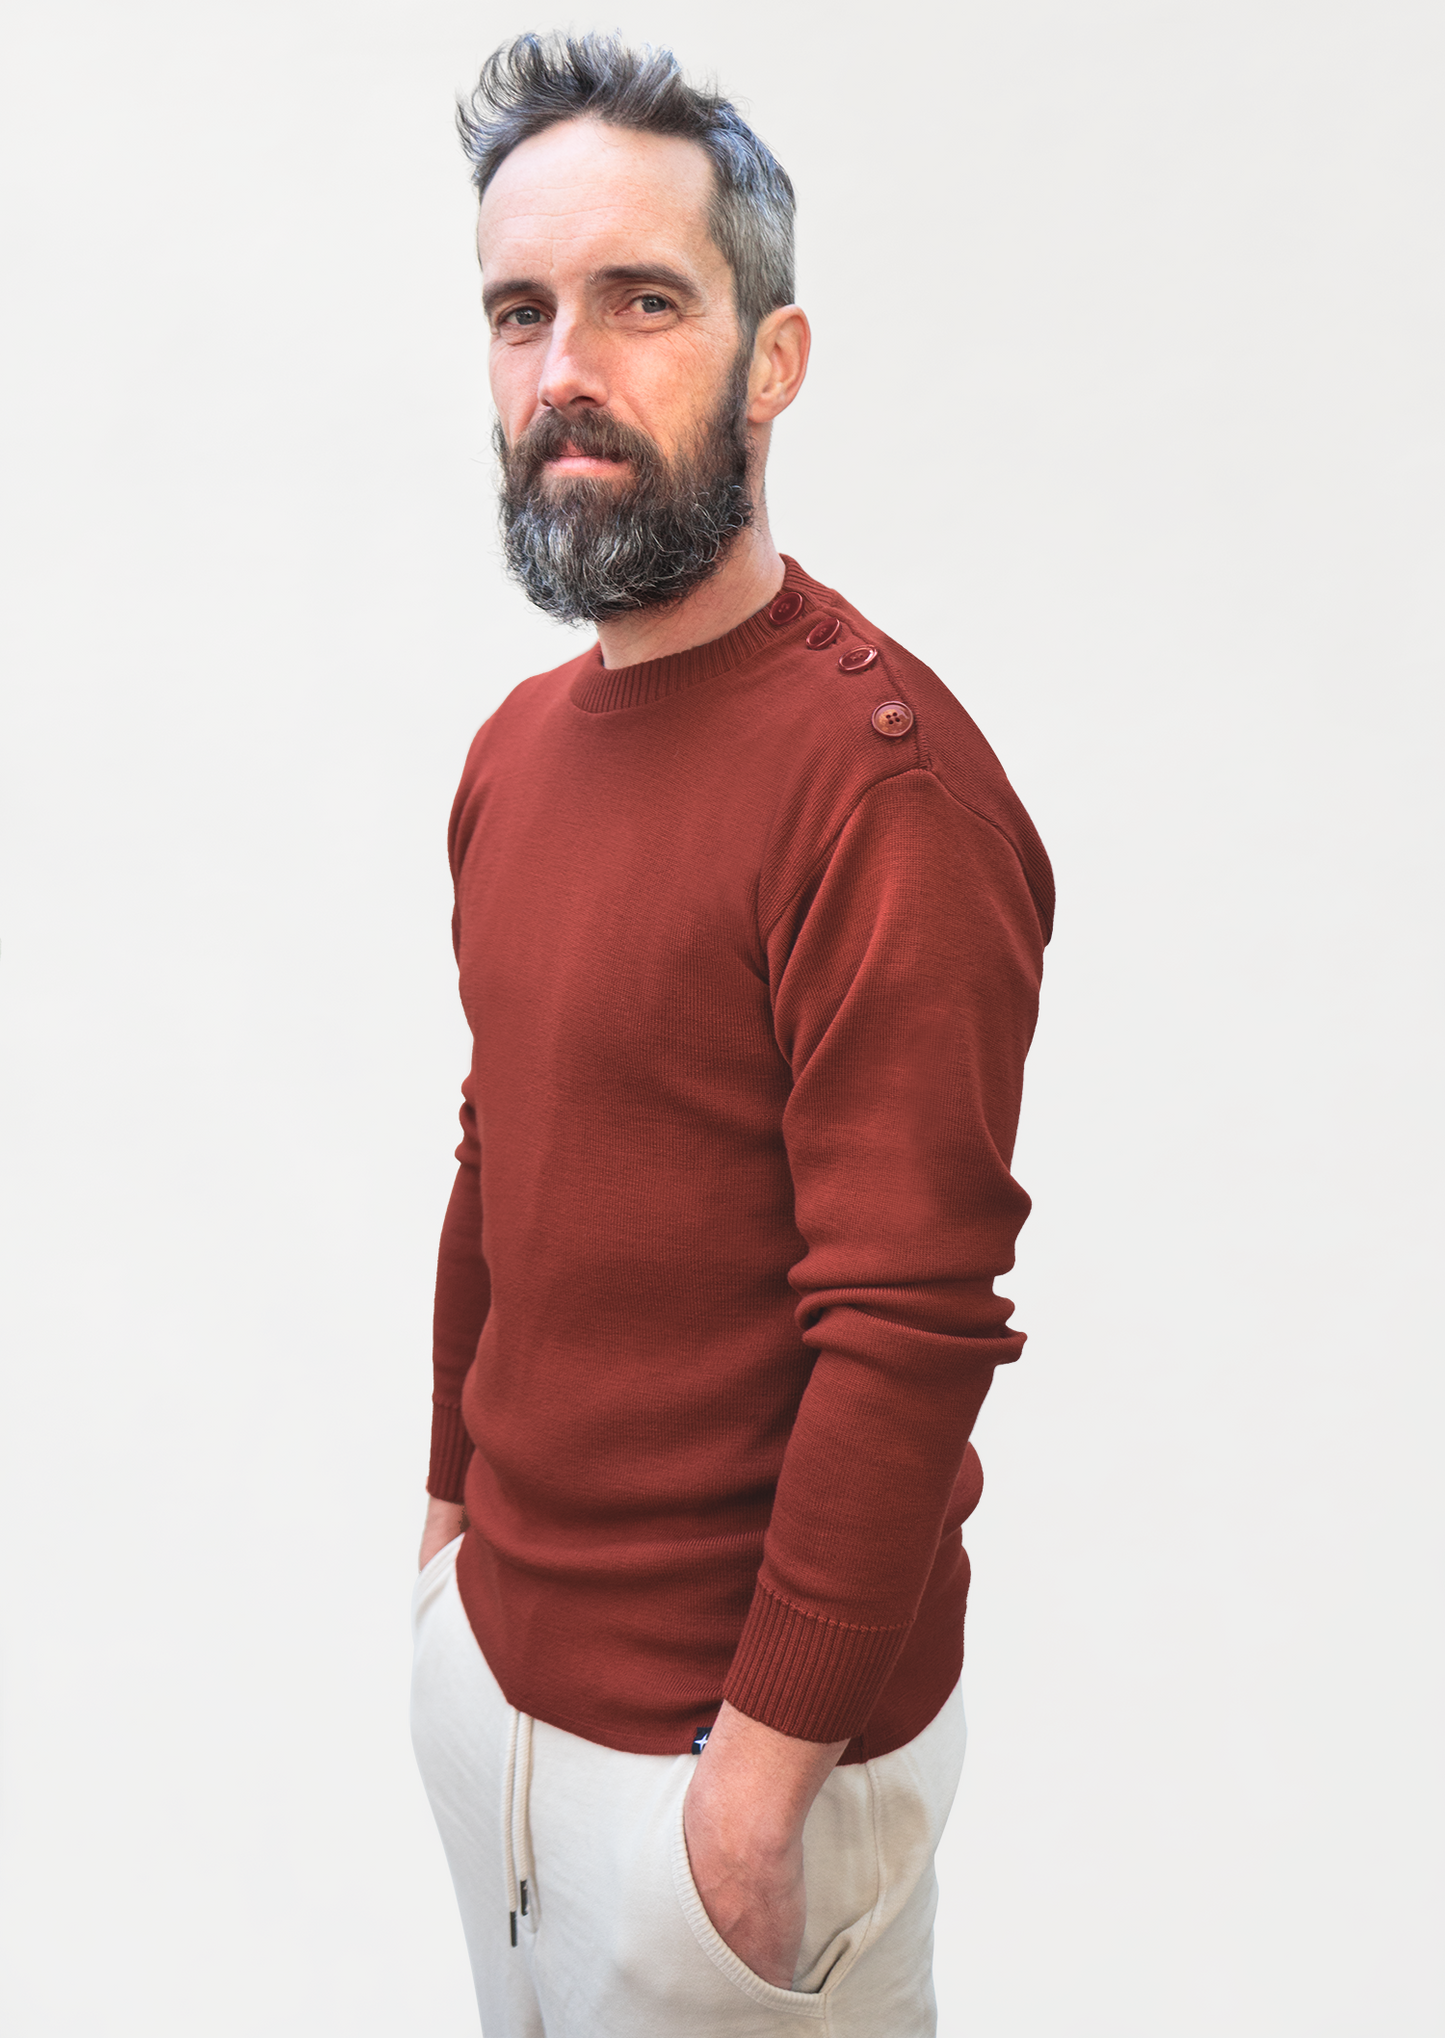 Gaël - sailor's sweater - rust